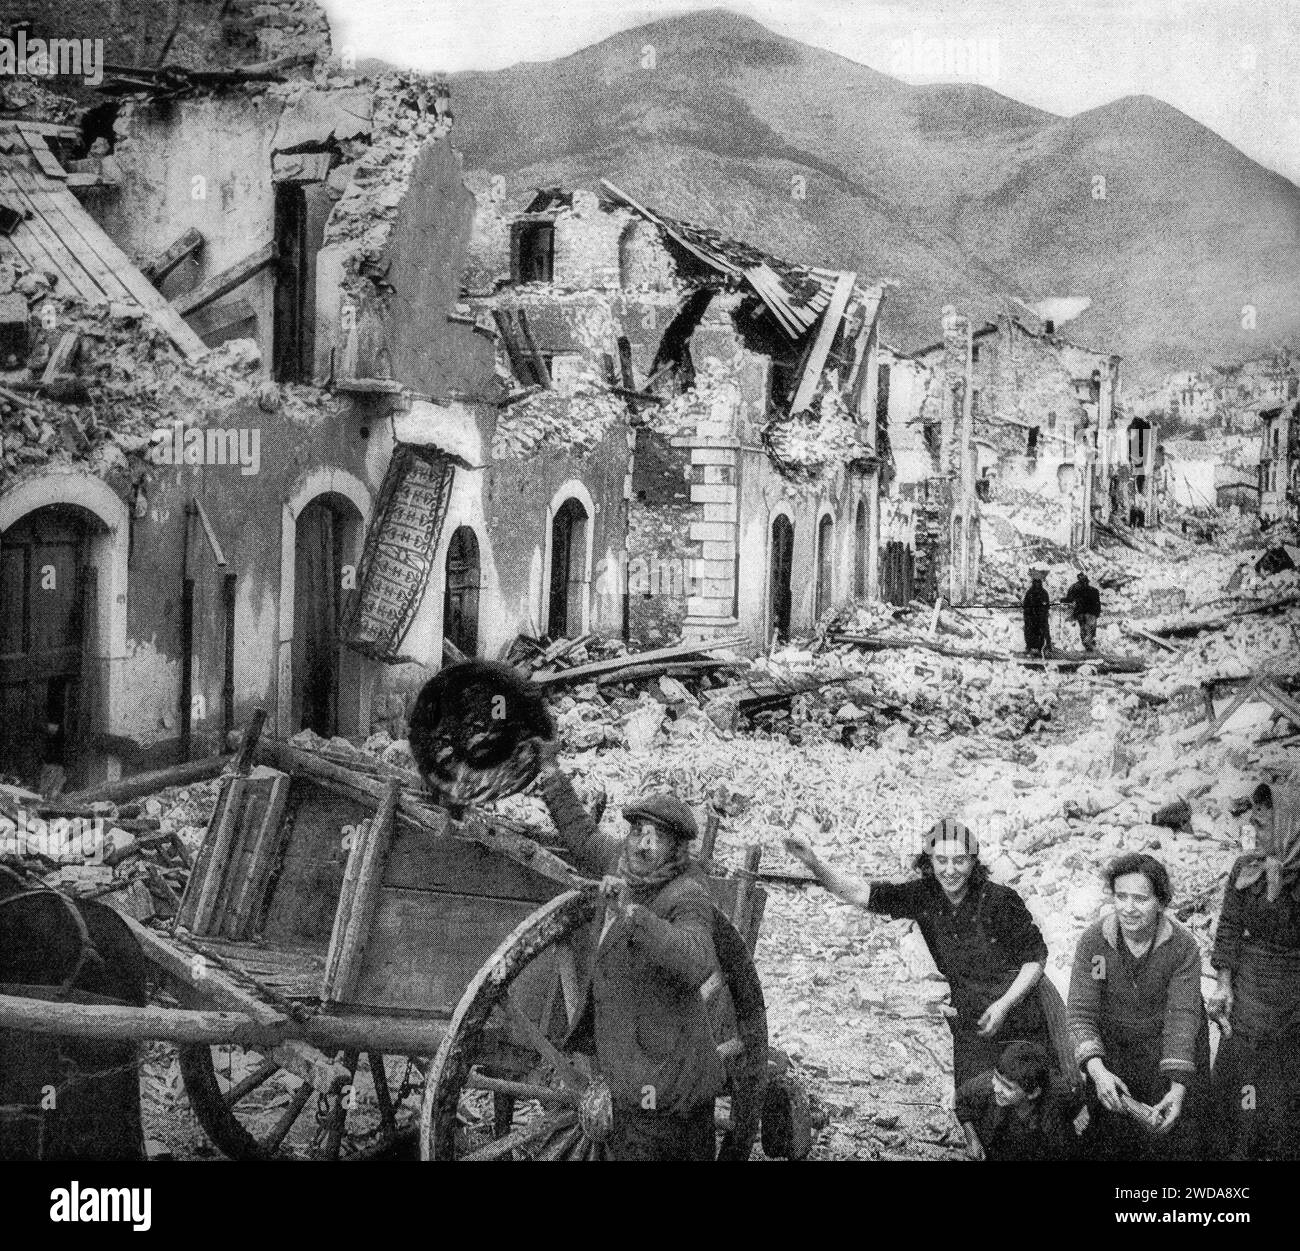 Italienische Zivilisten, die nach heftigen Kämpfen zwischen deutschen Verteidigern und kanadischen Truppen, die sich Ende Dezember 1943 an der Adriaküste nach Pescara kämpften, ihre Besitztümer aus ihren zerstörten Häusern gerettet haben. Stockfoto